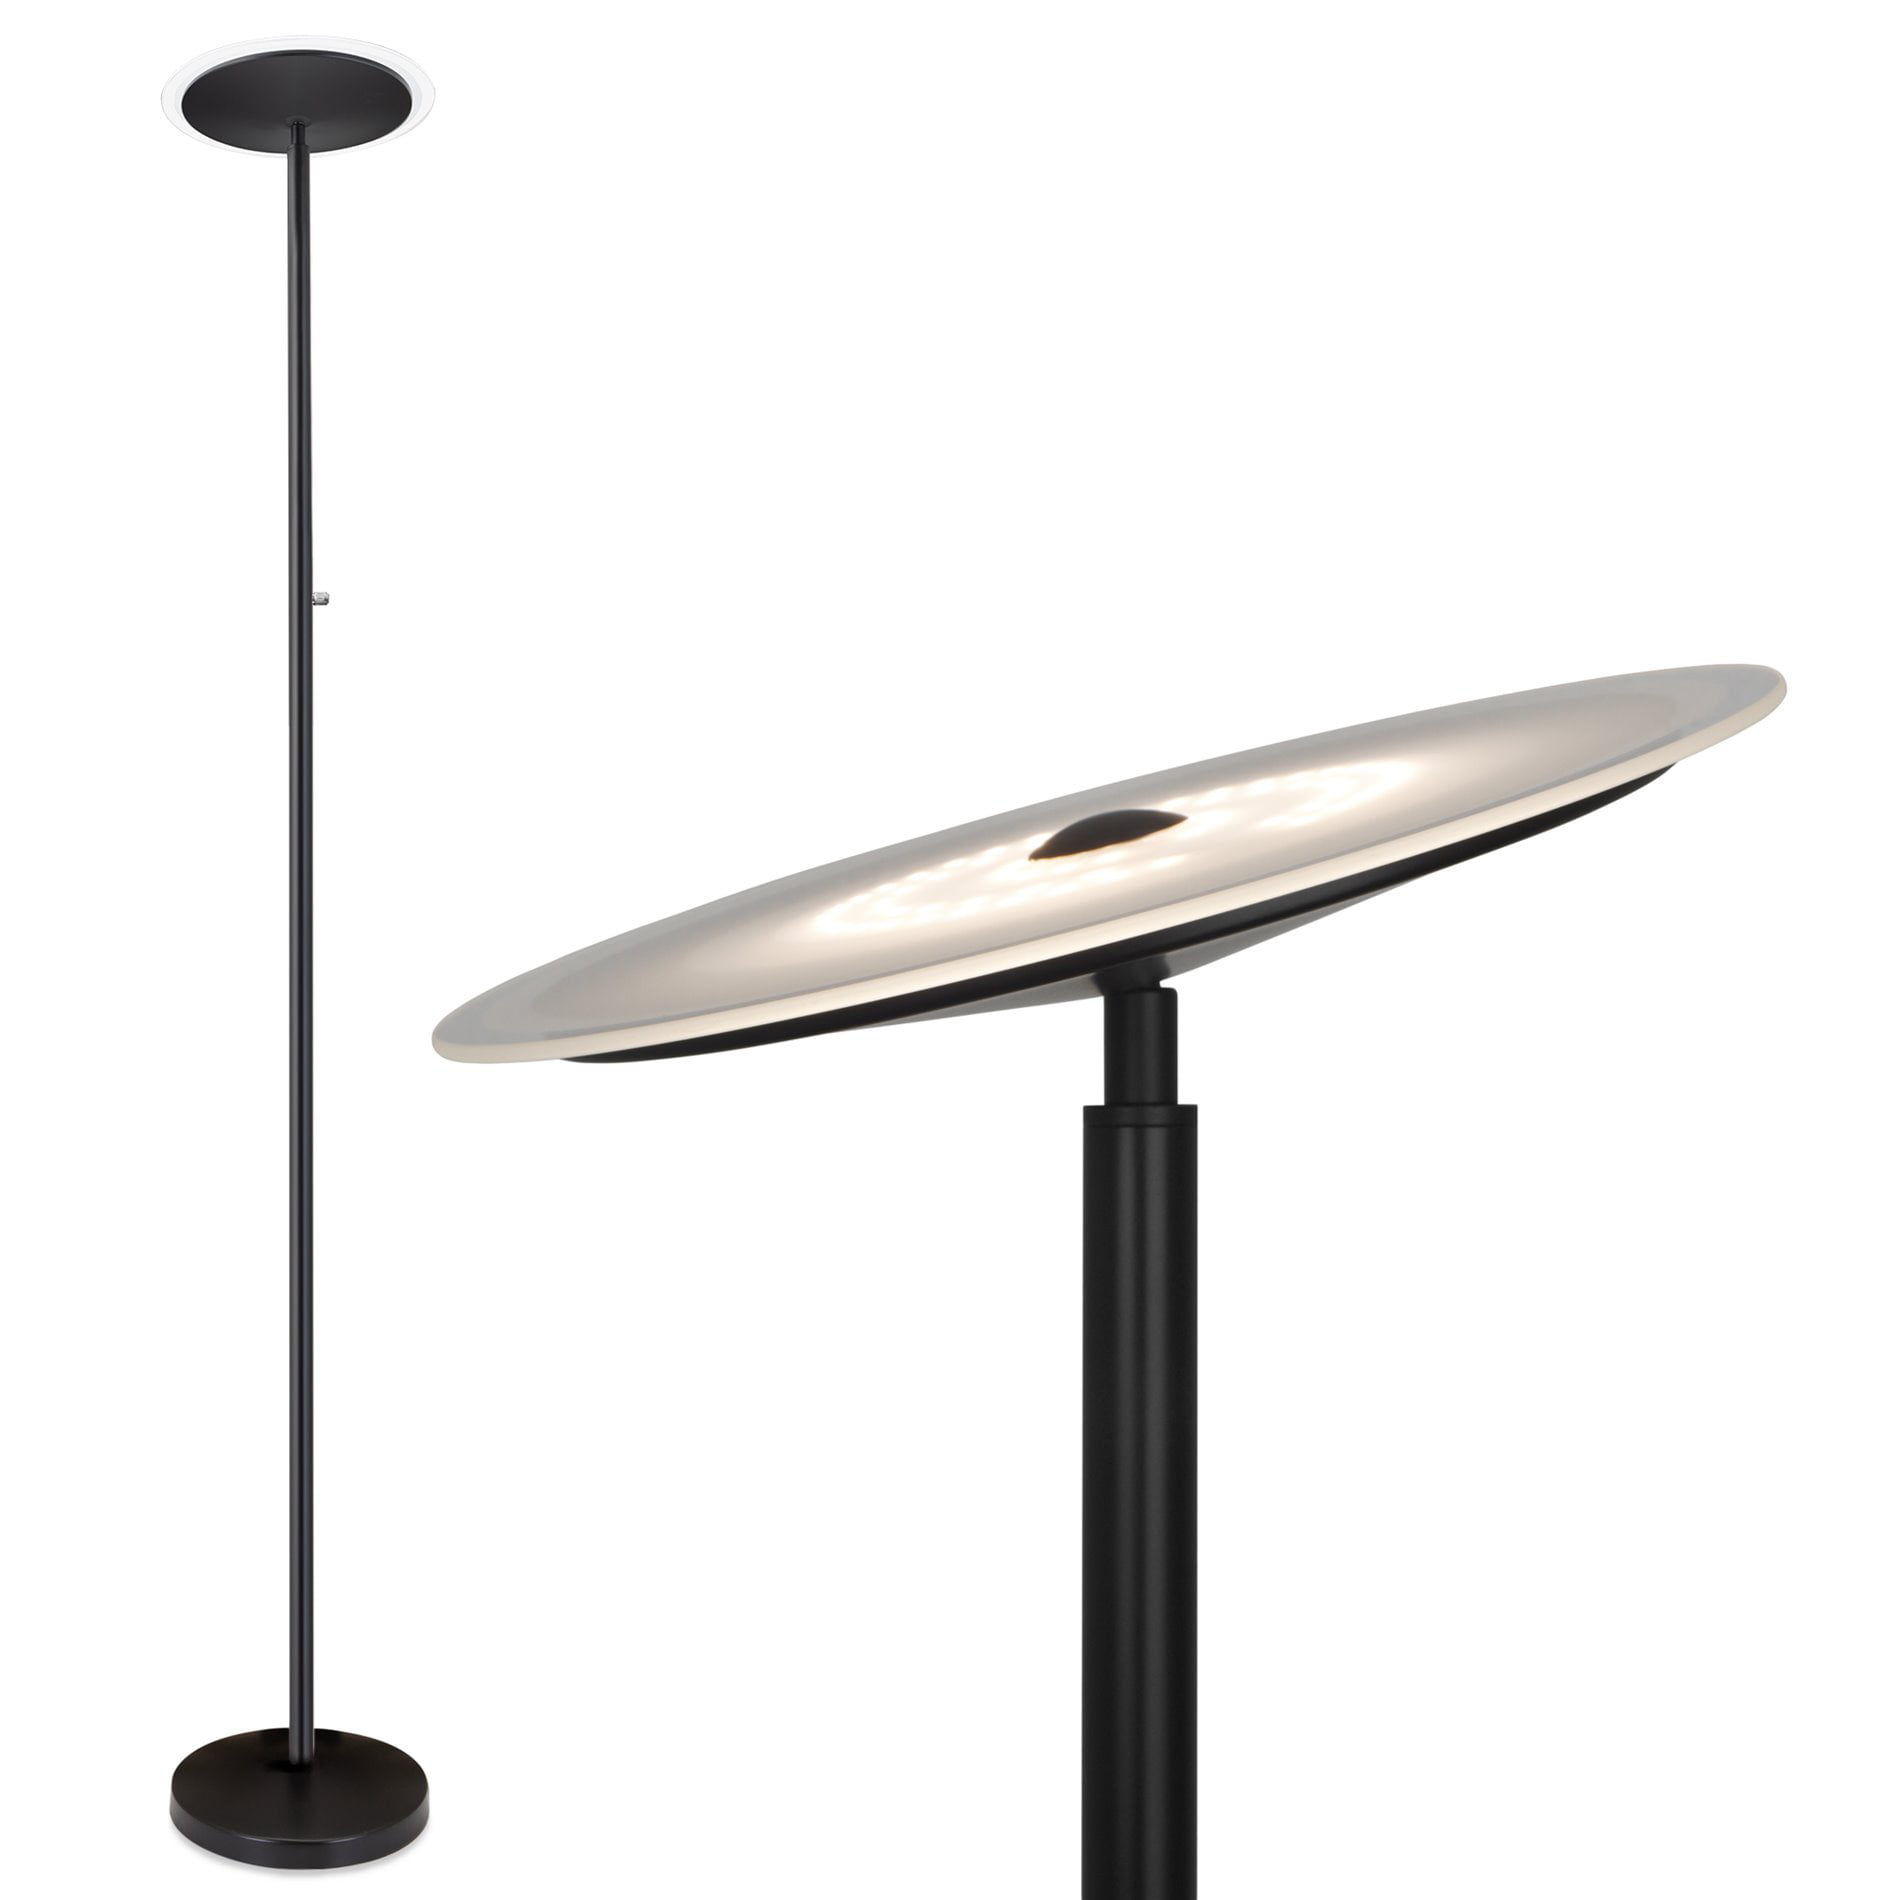 Revel Horizon 70" Modern Dimmable LED Floor Lamp Glass Diffuser White Finish 